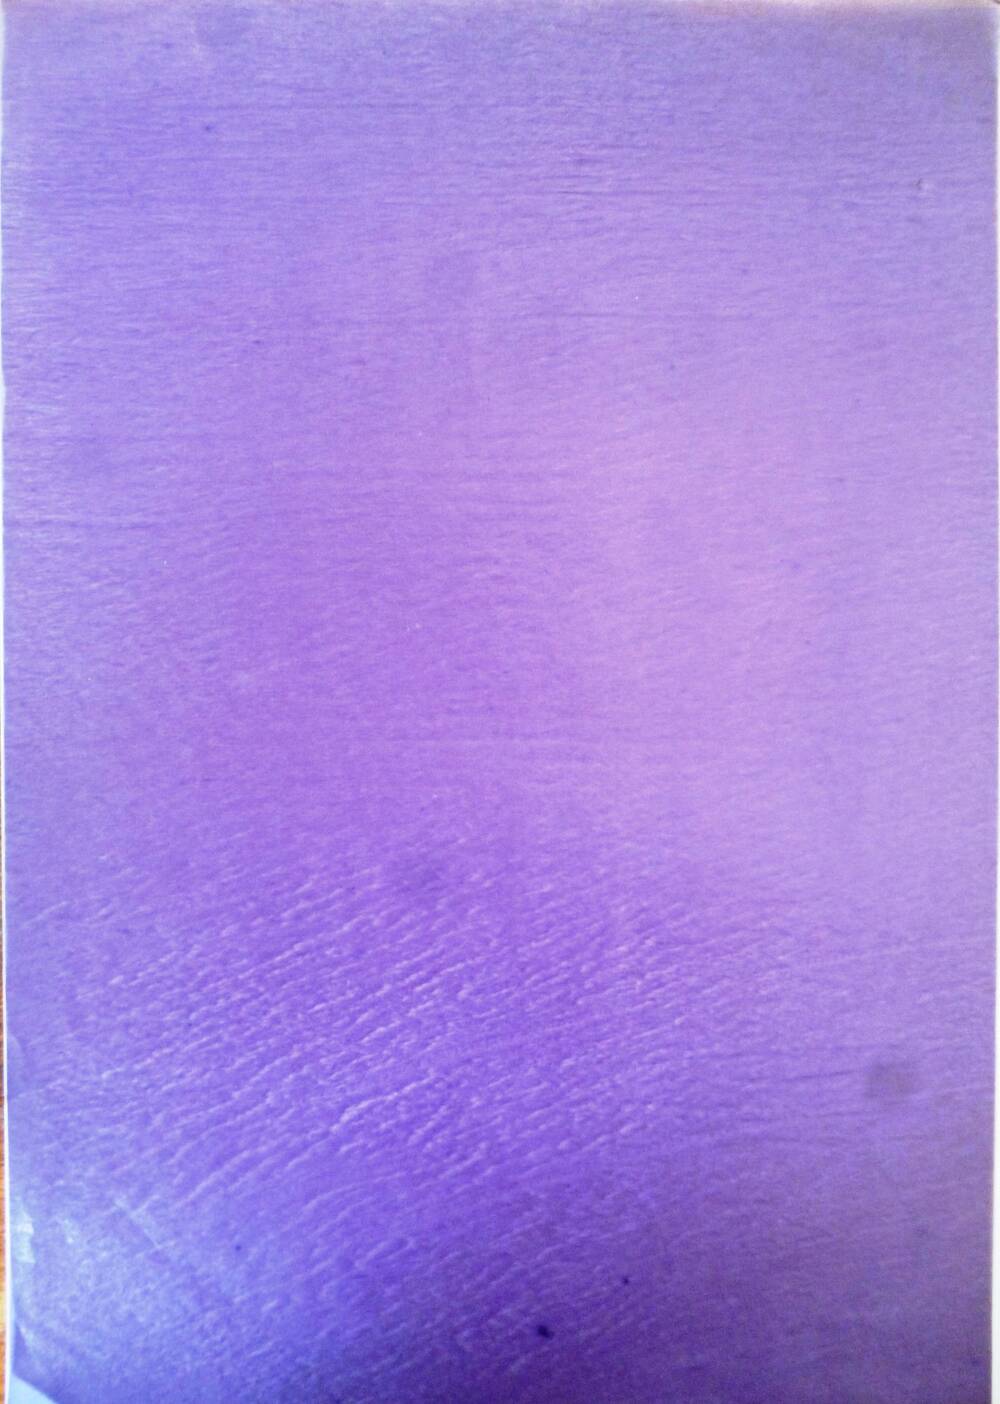 Копировальная бумага, фиолетового цвета.